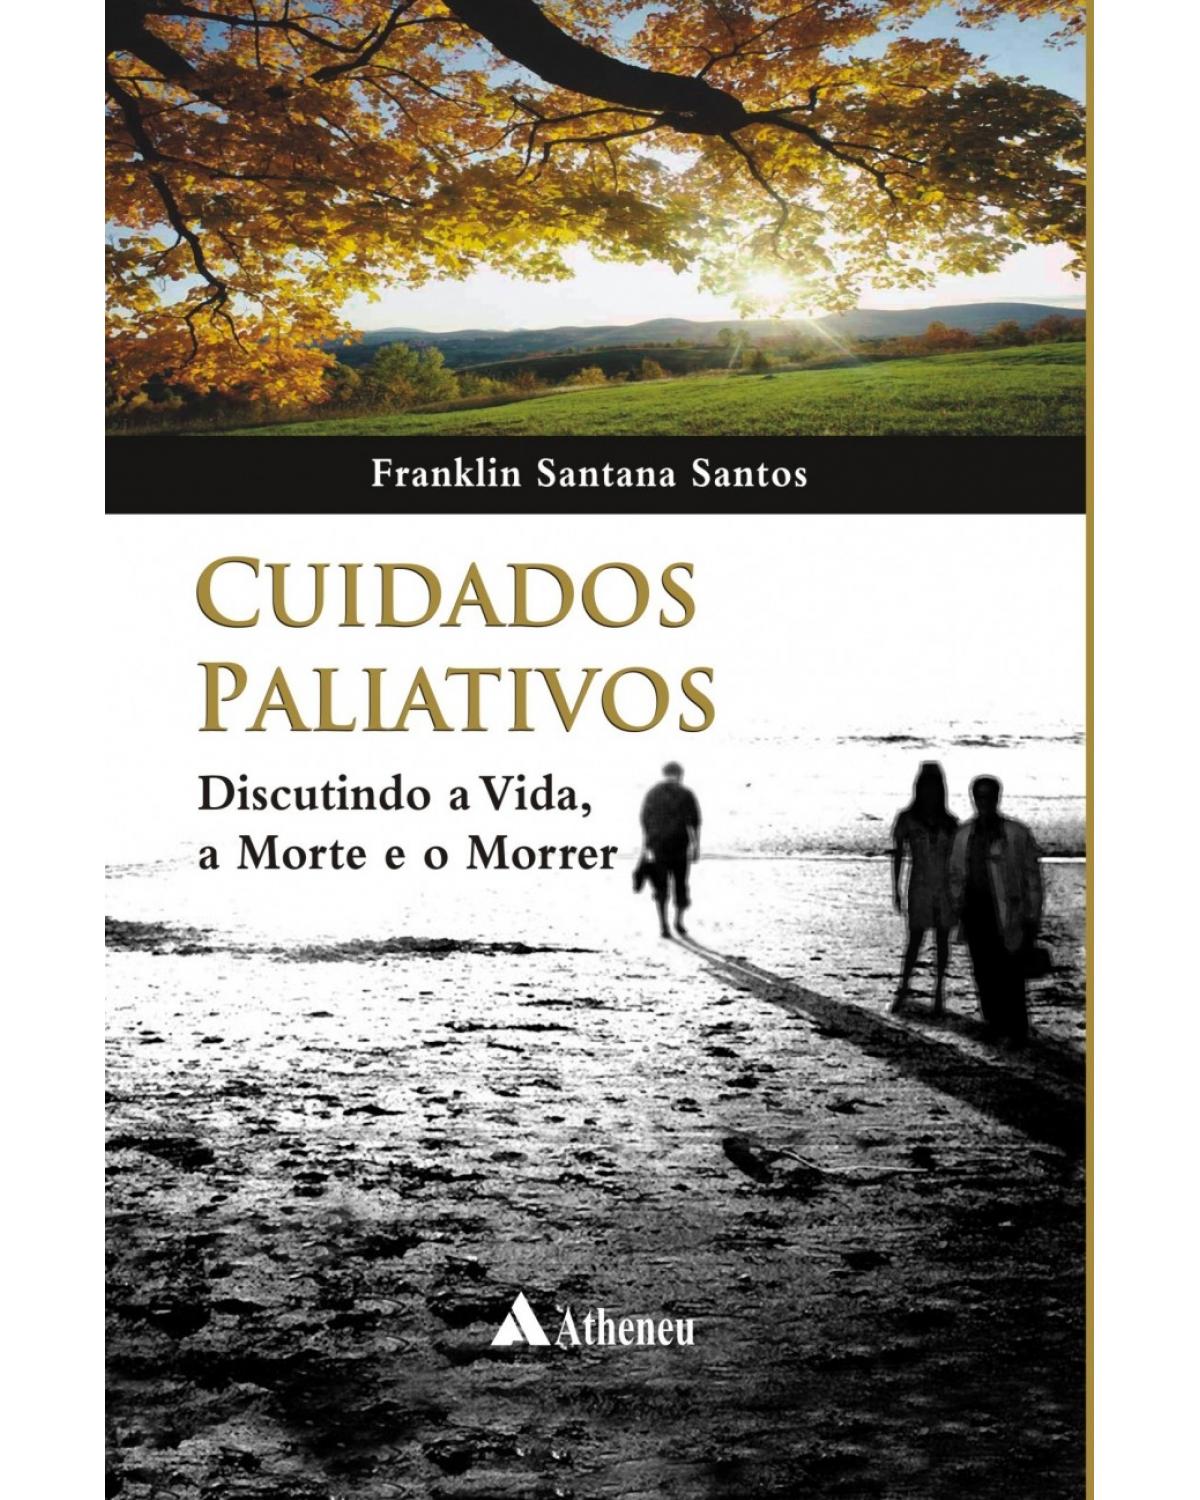 Cuidados paliativos - discutindo a vida, a morte e o morrer - 1ª Edição | 2009